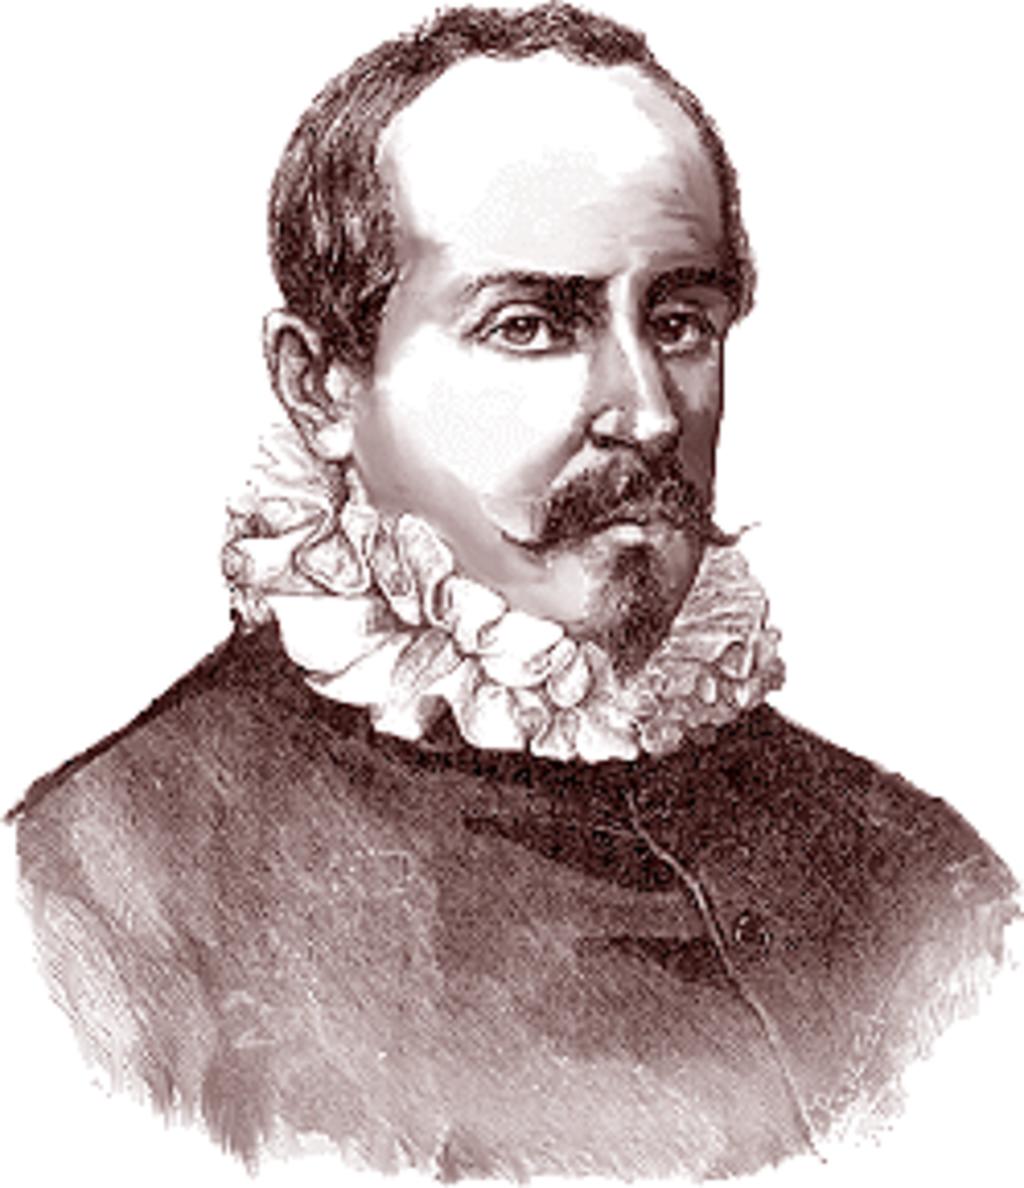 1639: Acaban los días de Juan Ruiz de Alarcón, escritor novohispano del Siglo de Oro